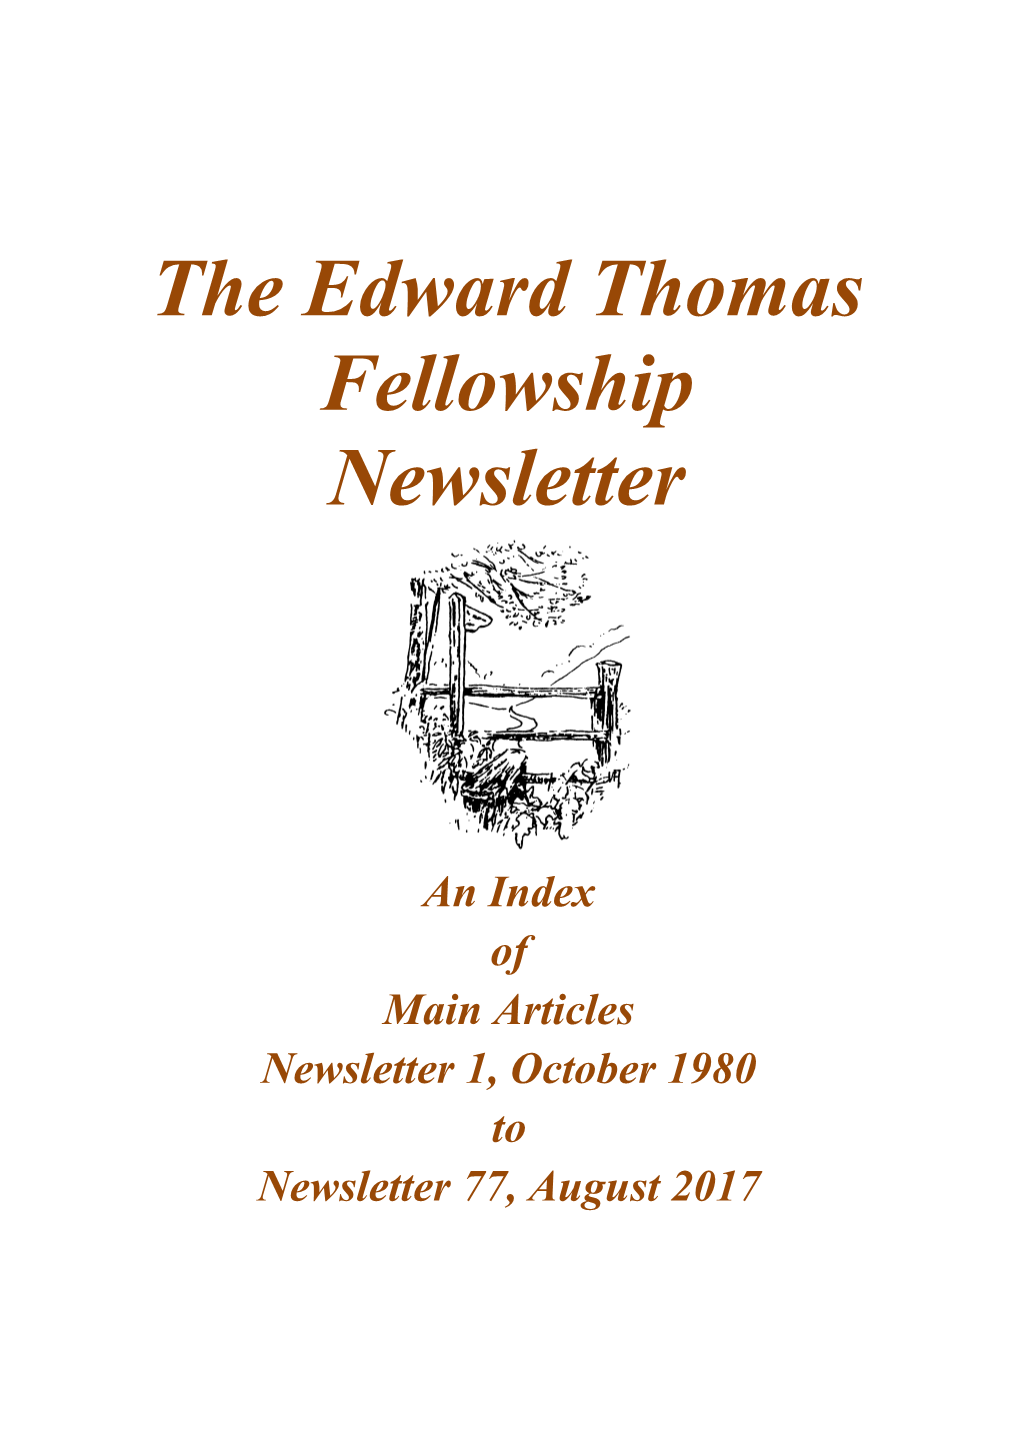 The Edward Thomas Fellowship